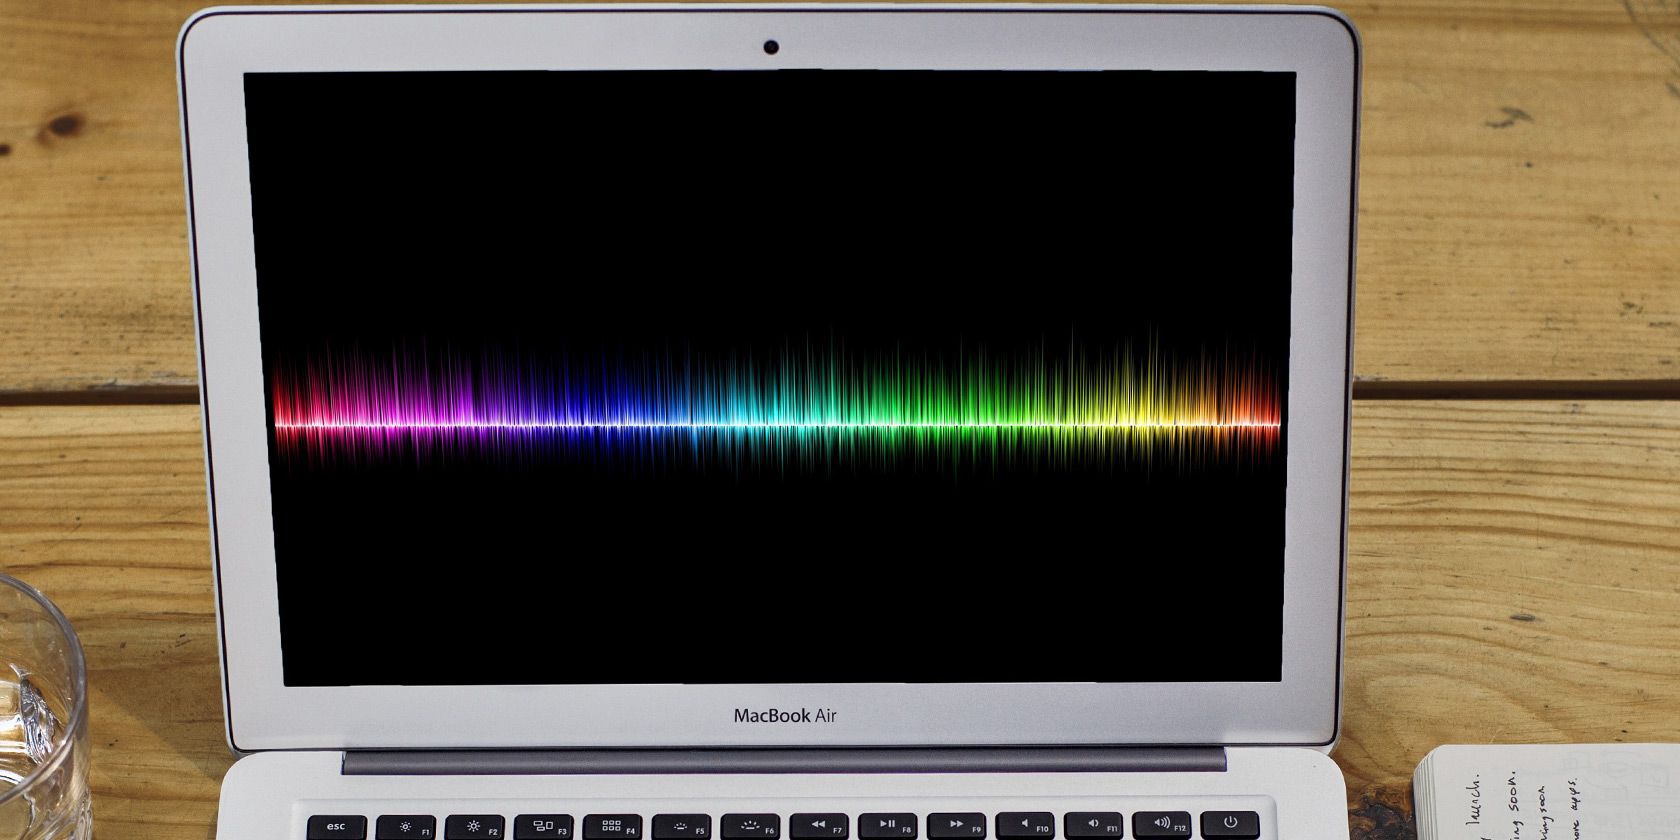 audio editor for mac high sierra